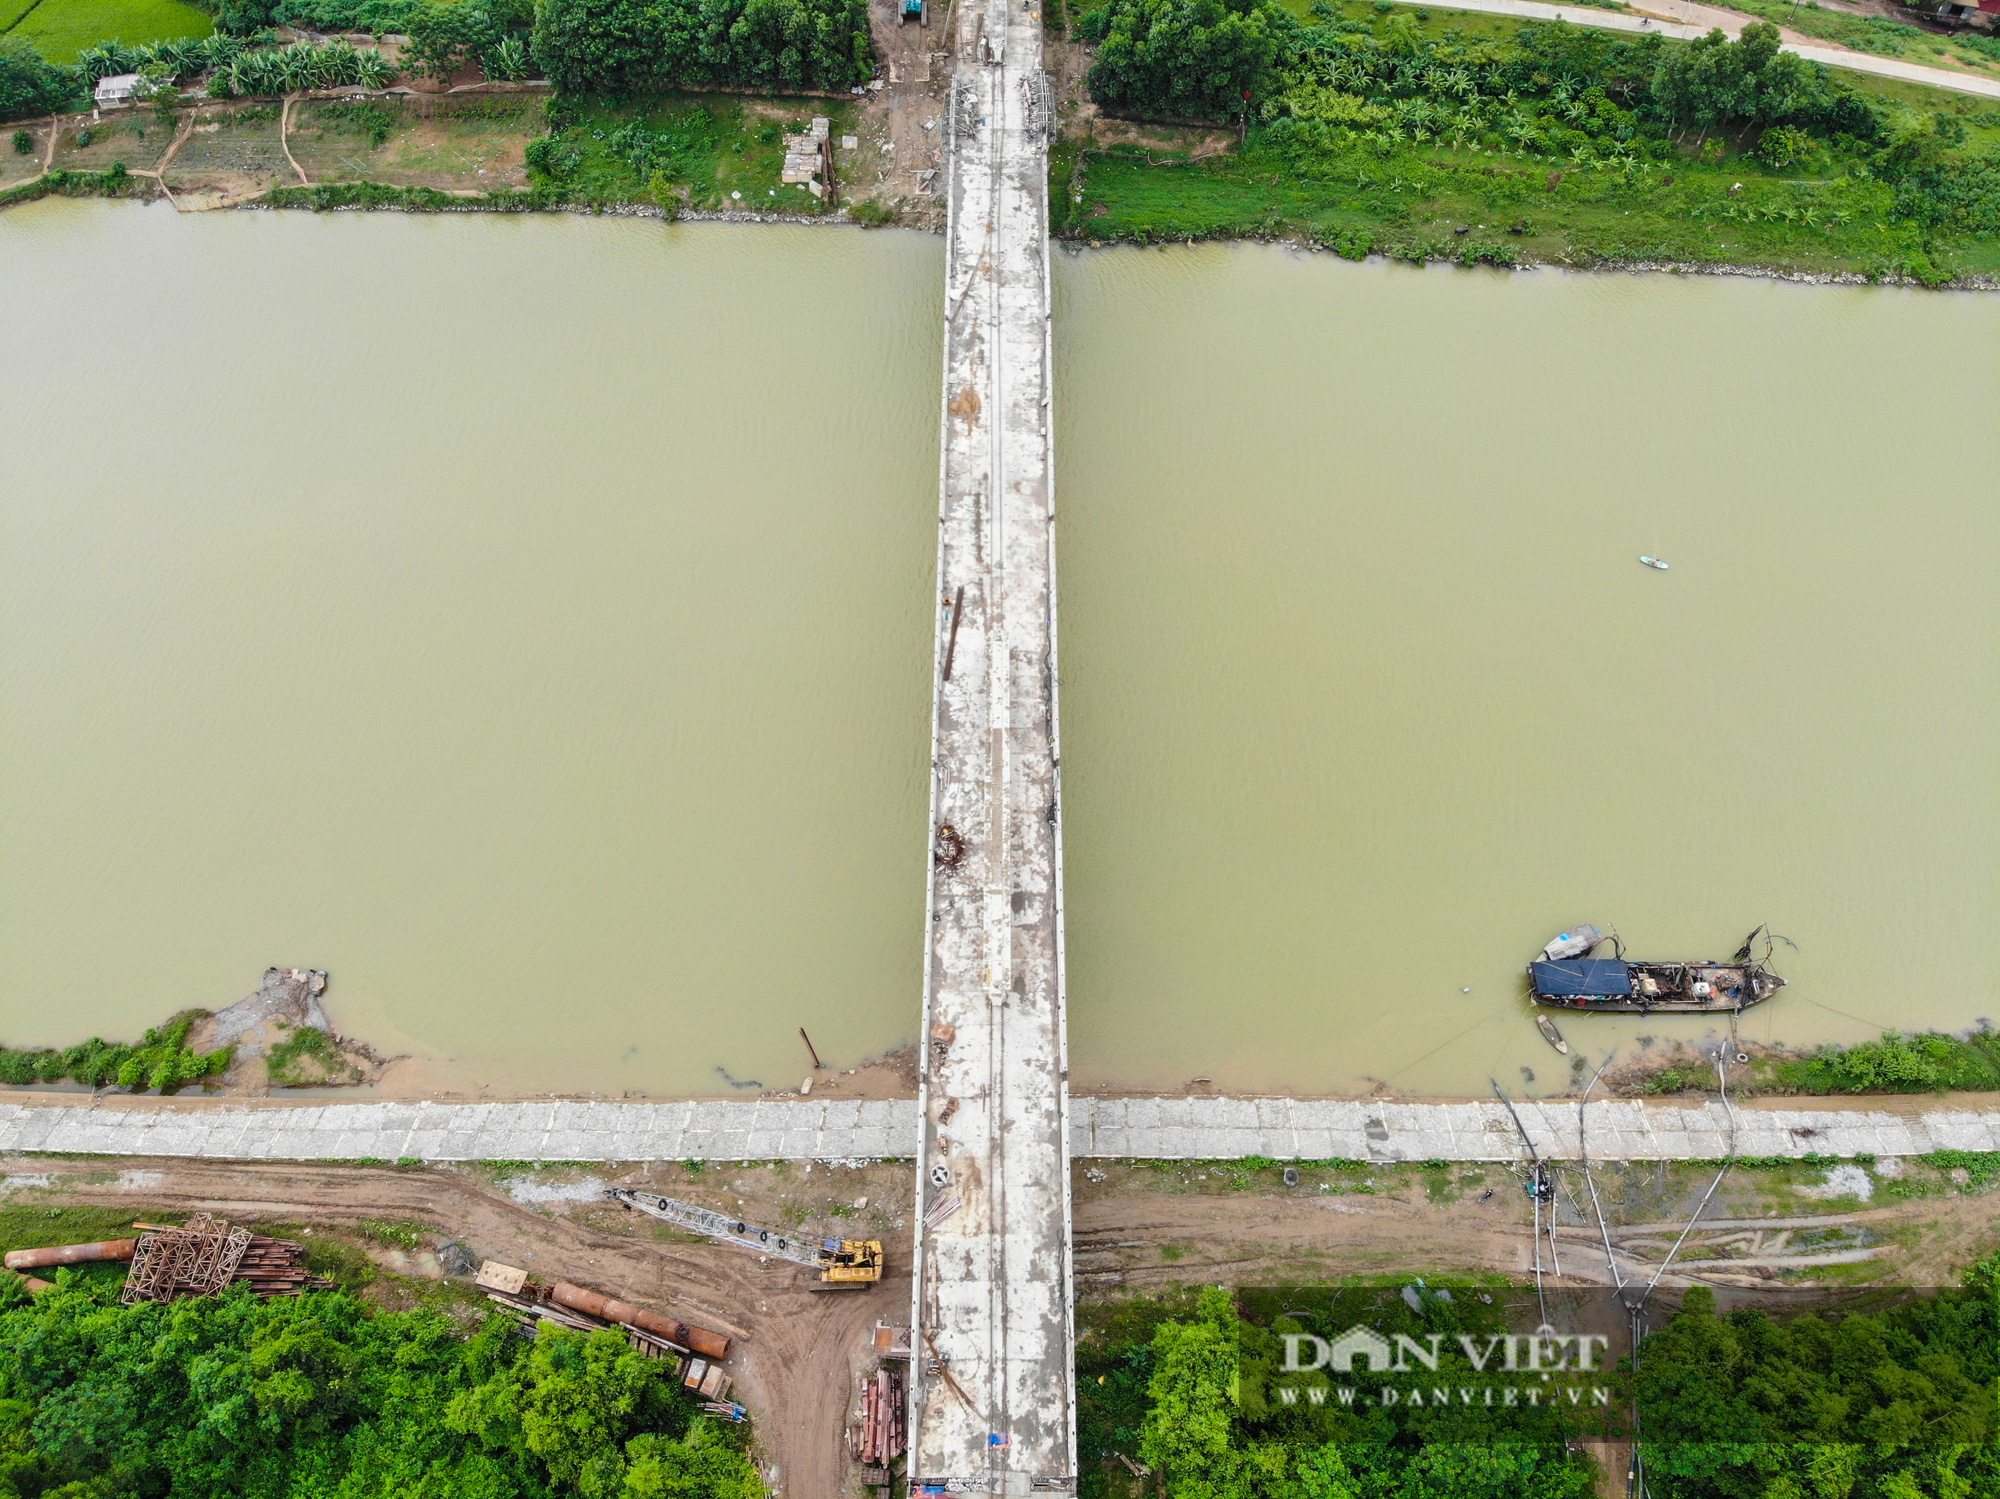 Chuẩn bị hoàn thiện cây cầu vượt sông nối liền Hà Nội - Bắc Giang - Ảnh 4.